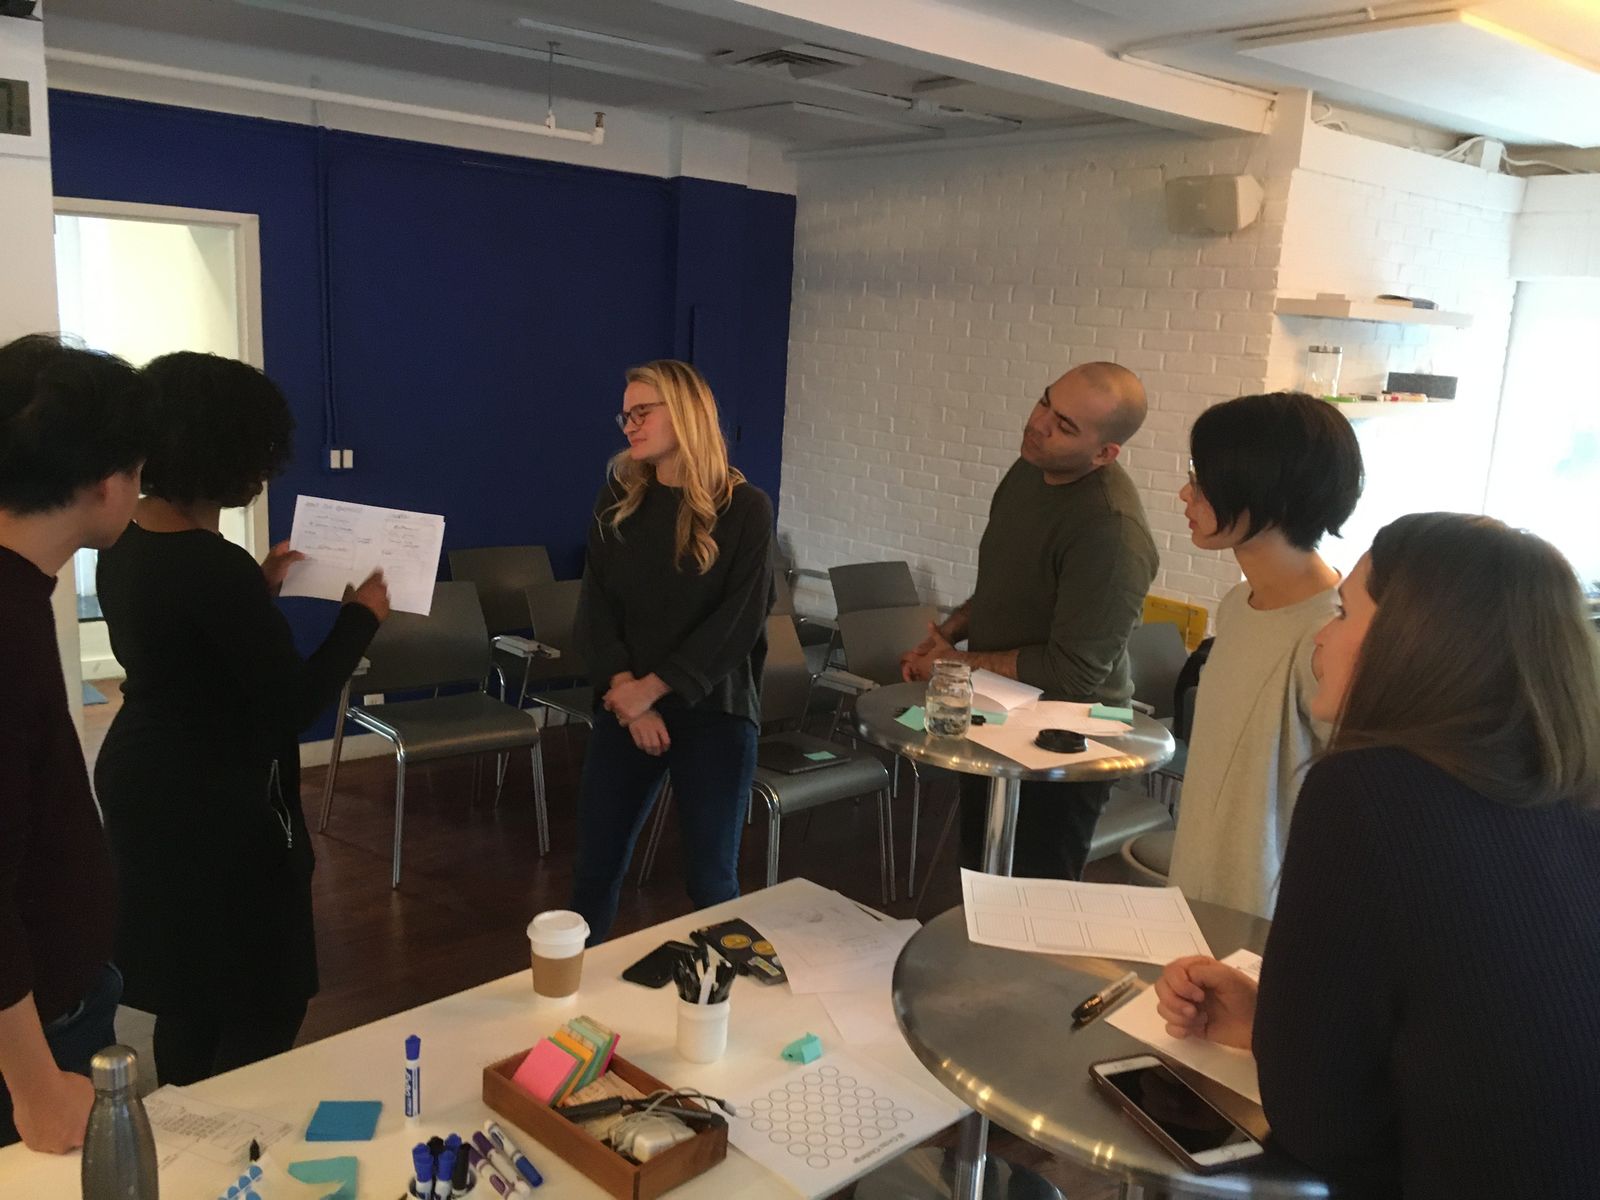 Sharing design sketches during a design workshop